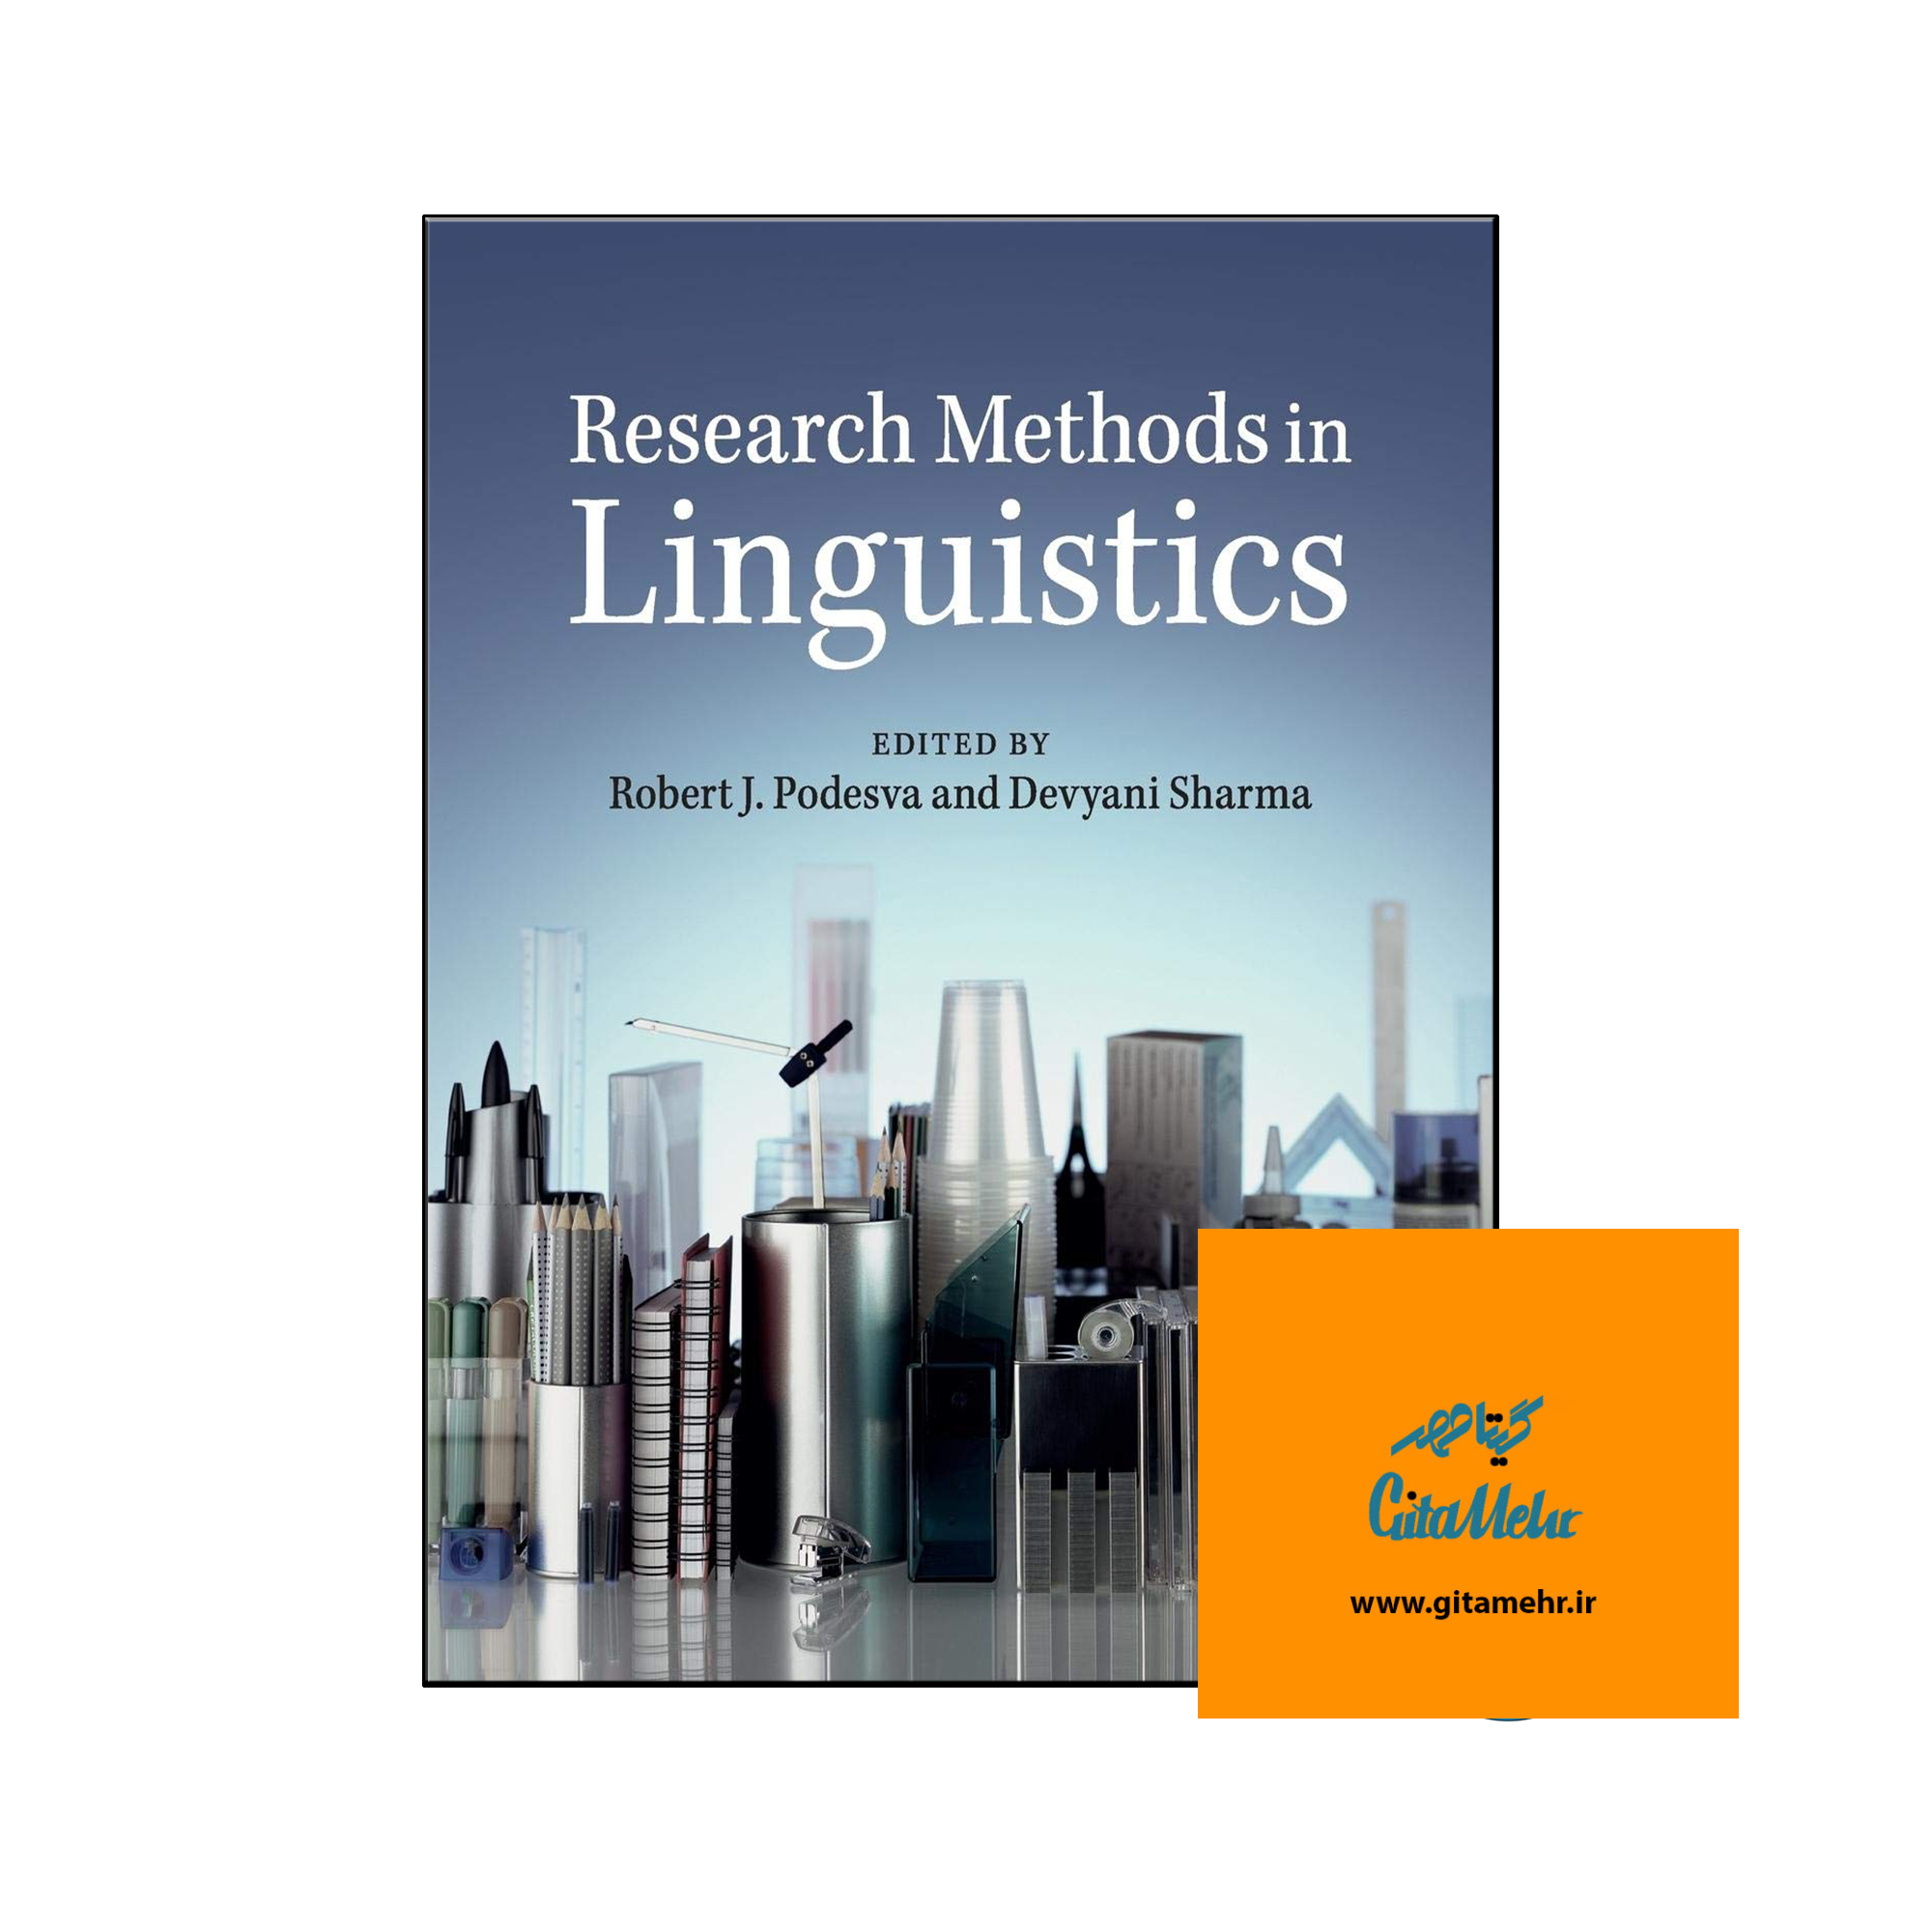 daa9d8aad8a7d8a8 research methods in linguistics 65ecb09480db2